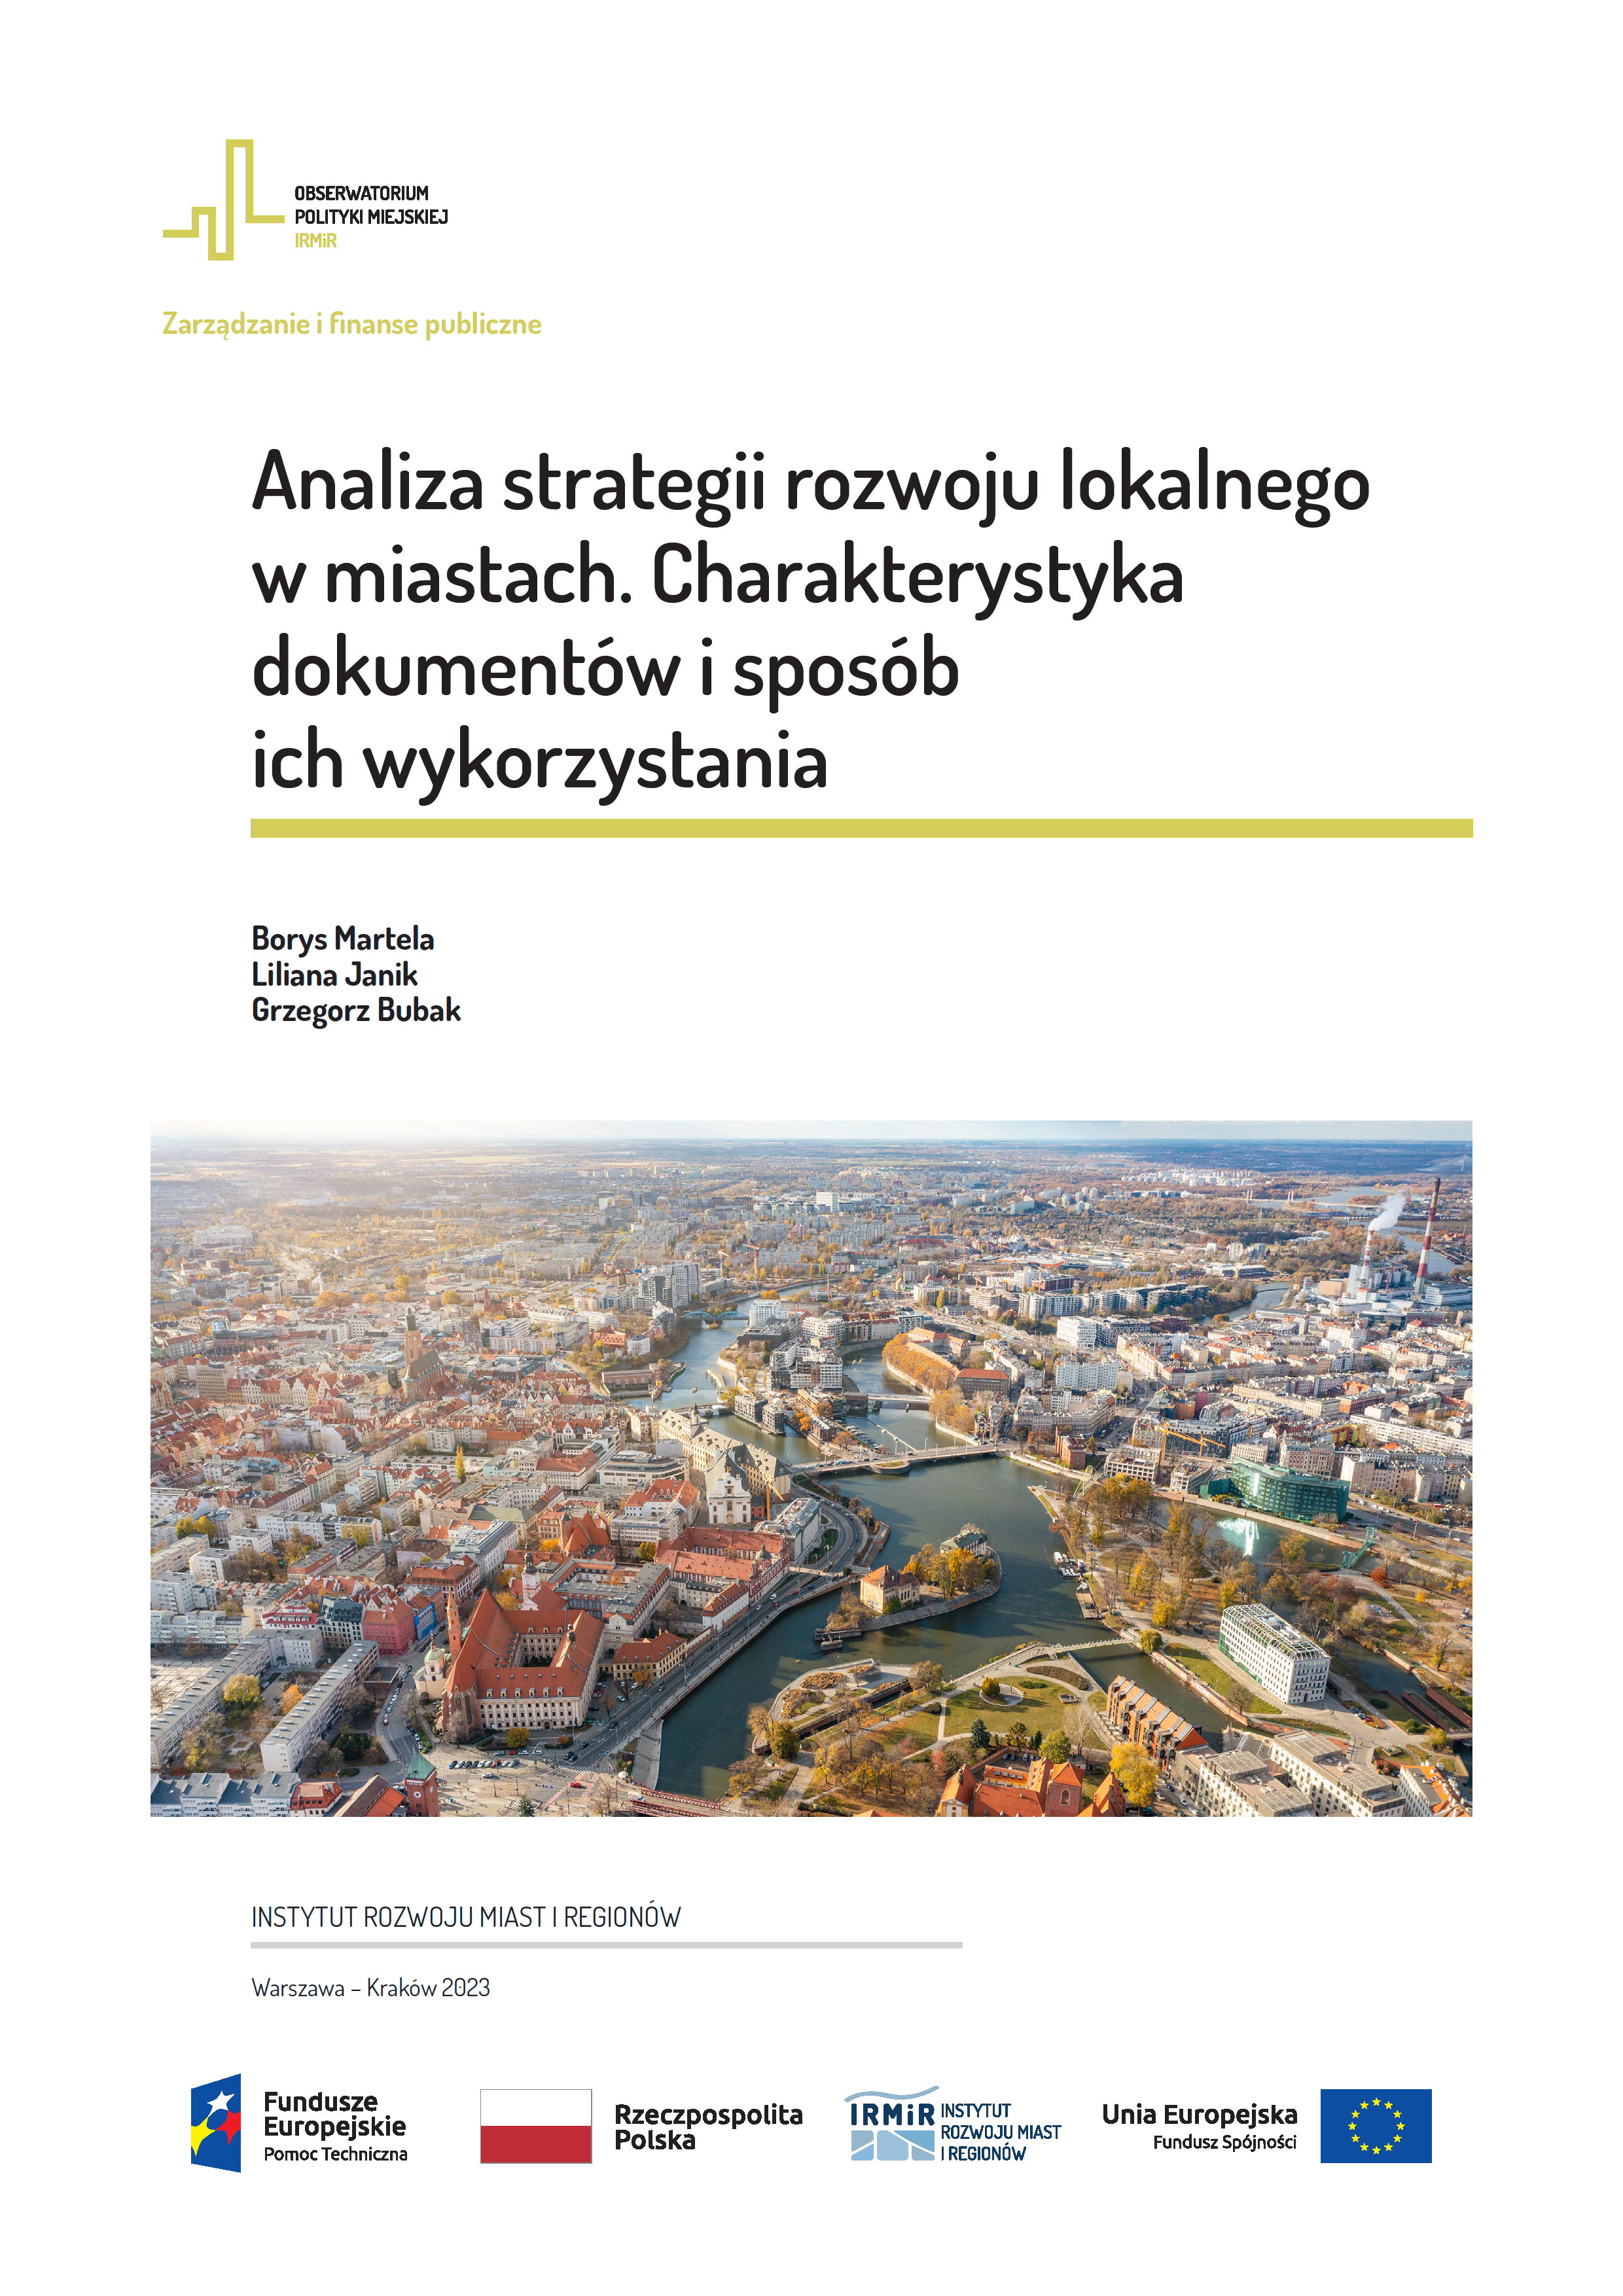 Analiza strategii rozwoju lokalnego w miastach. Charakterystyka dokumentów i sposób ich wykorzystania